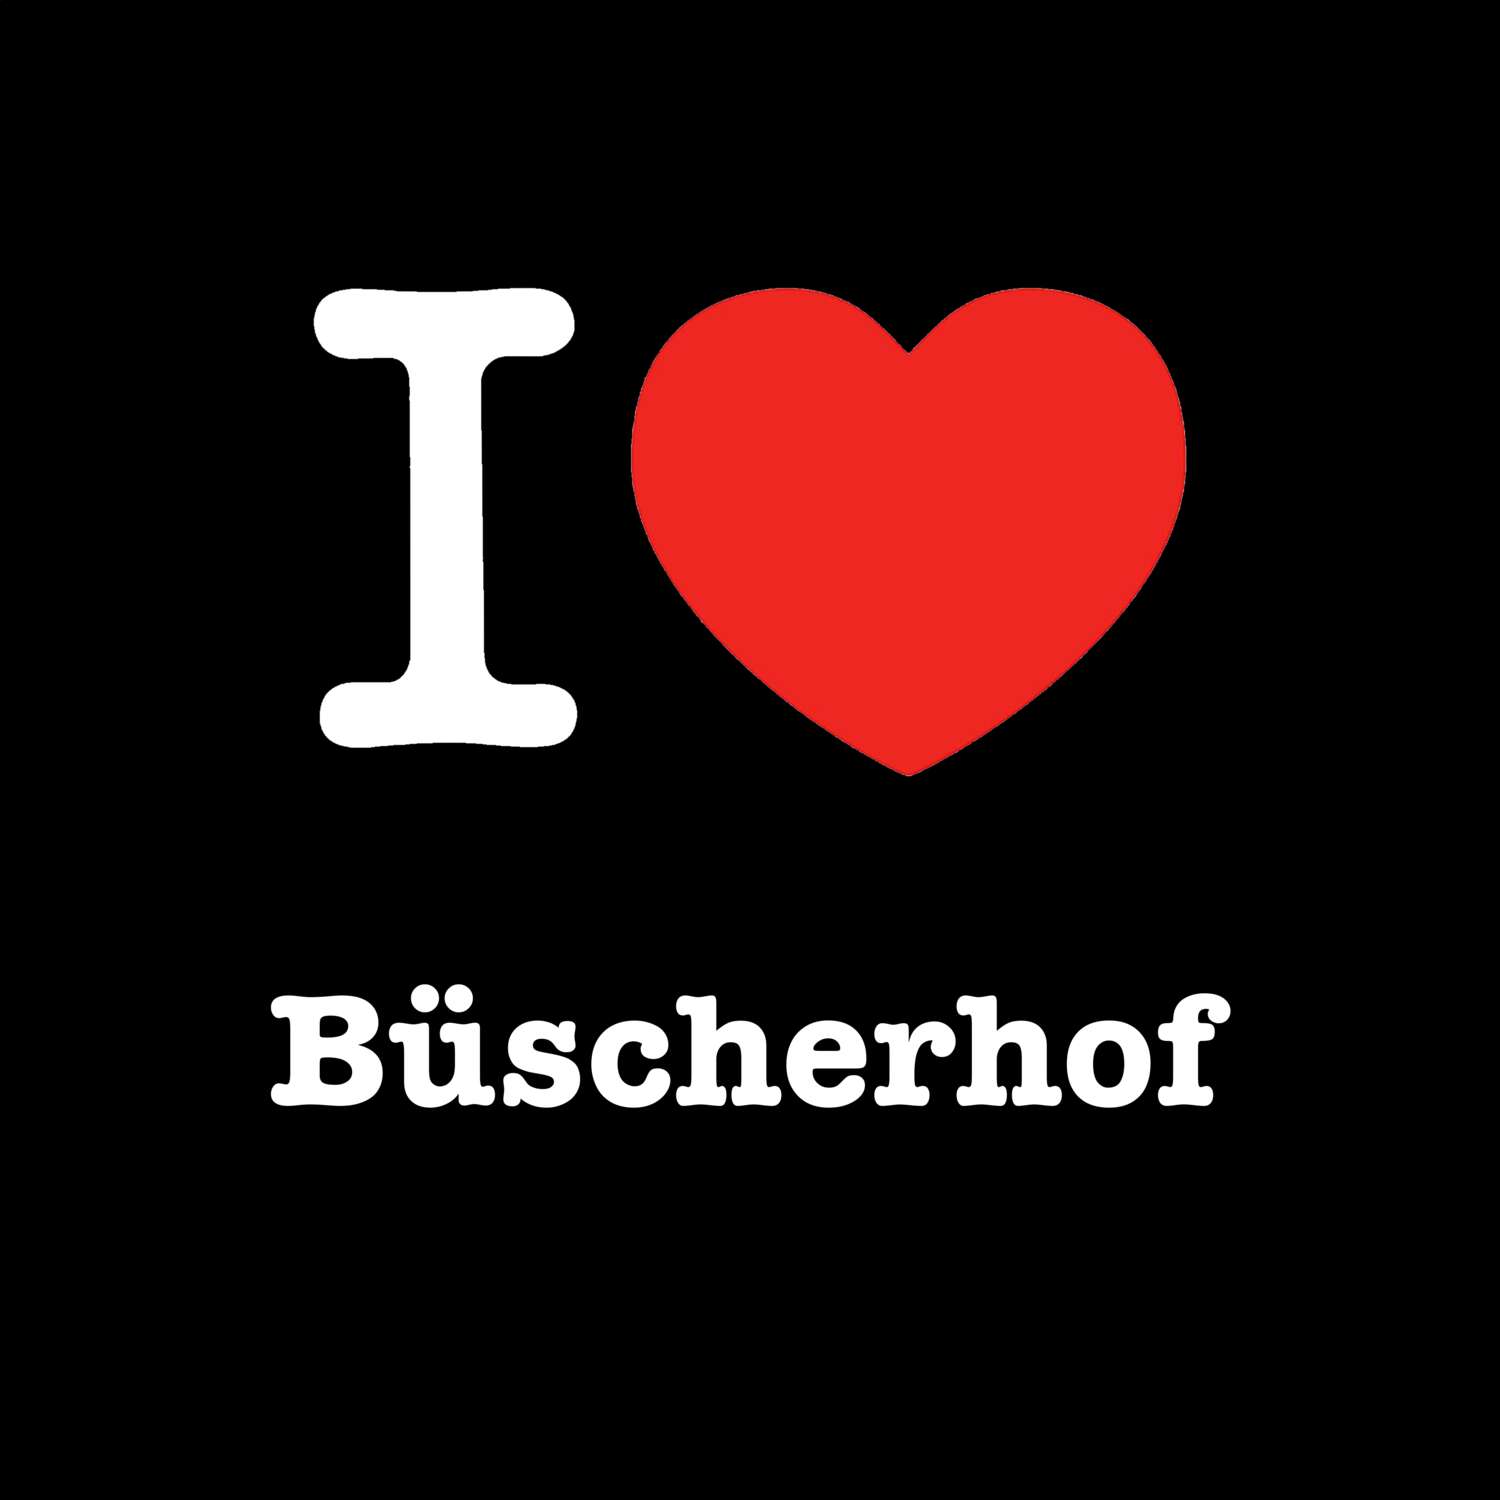 Büscherhof T-Shirt »I love«